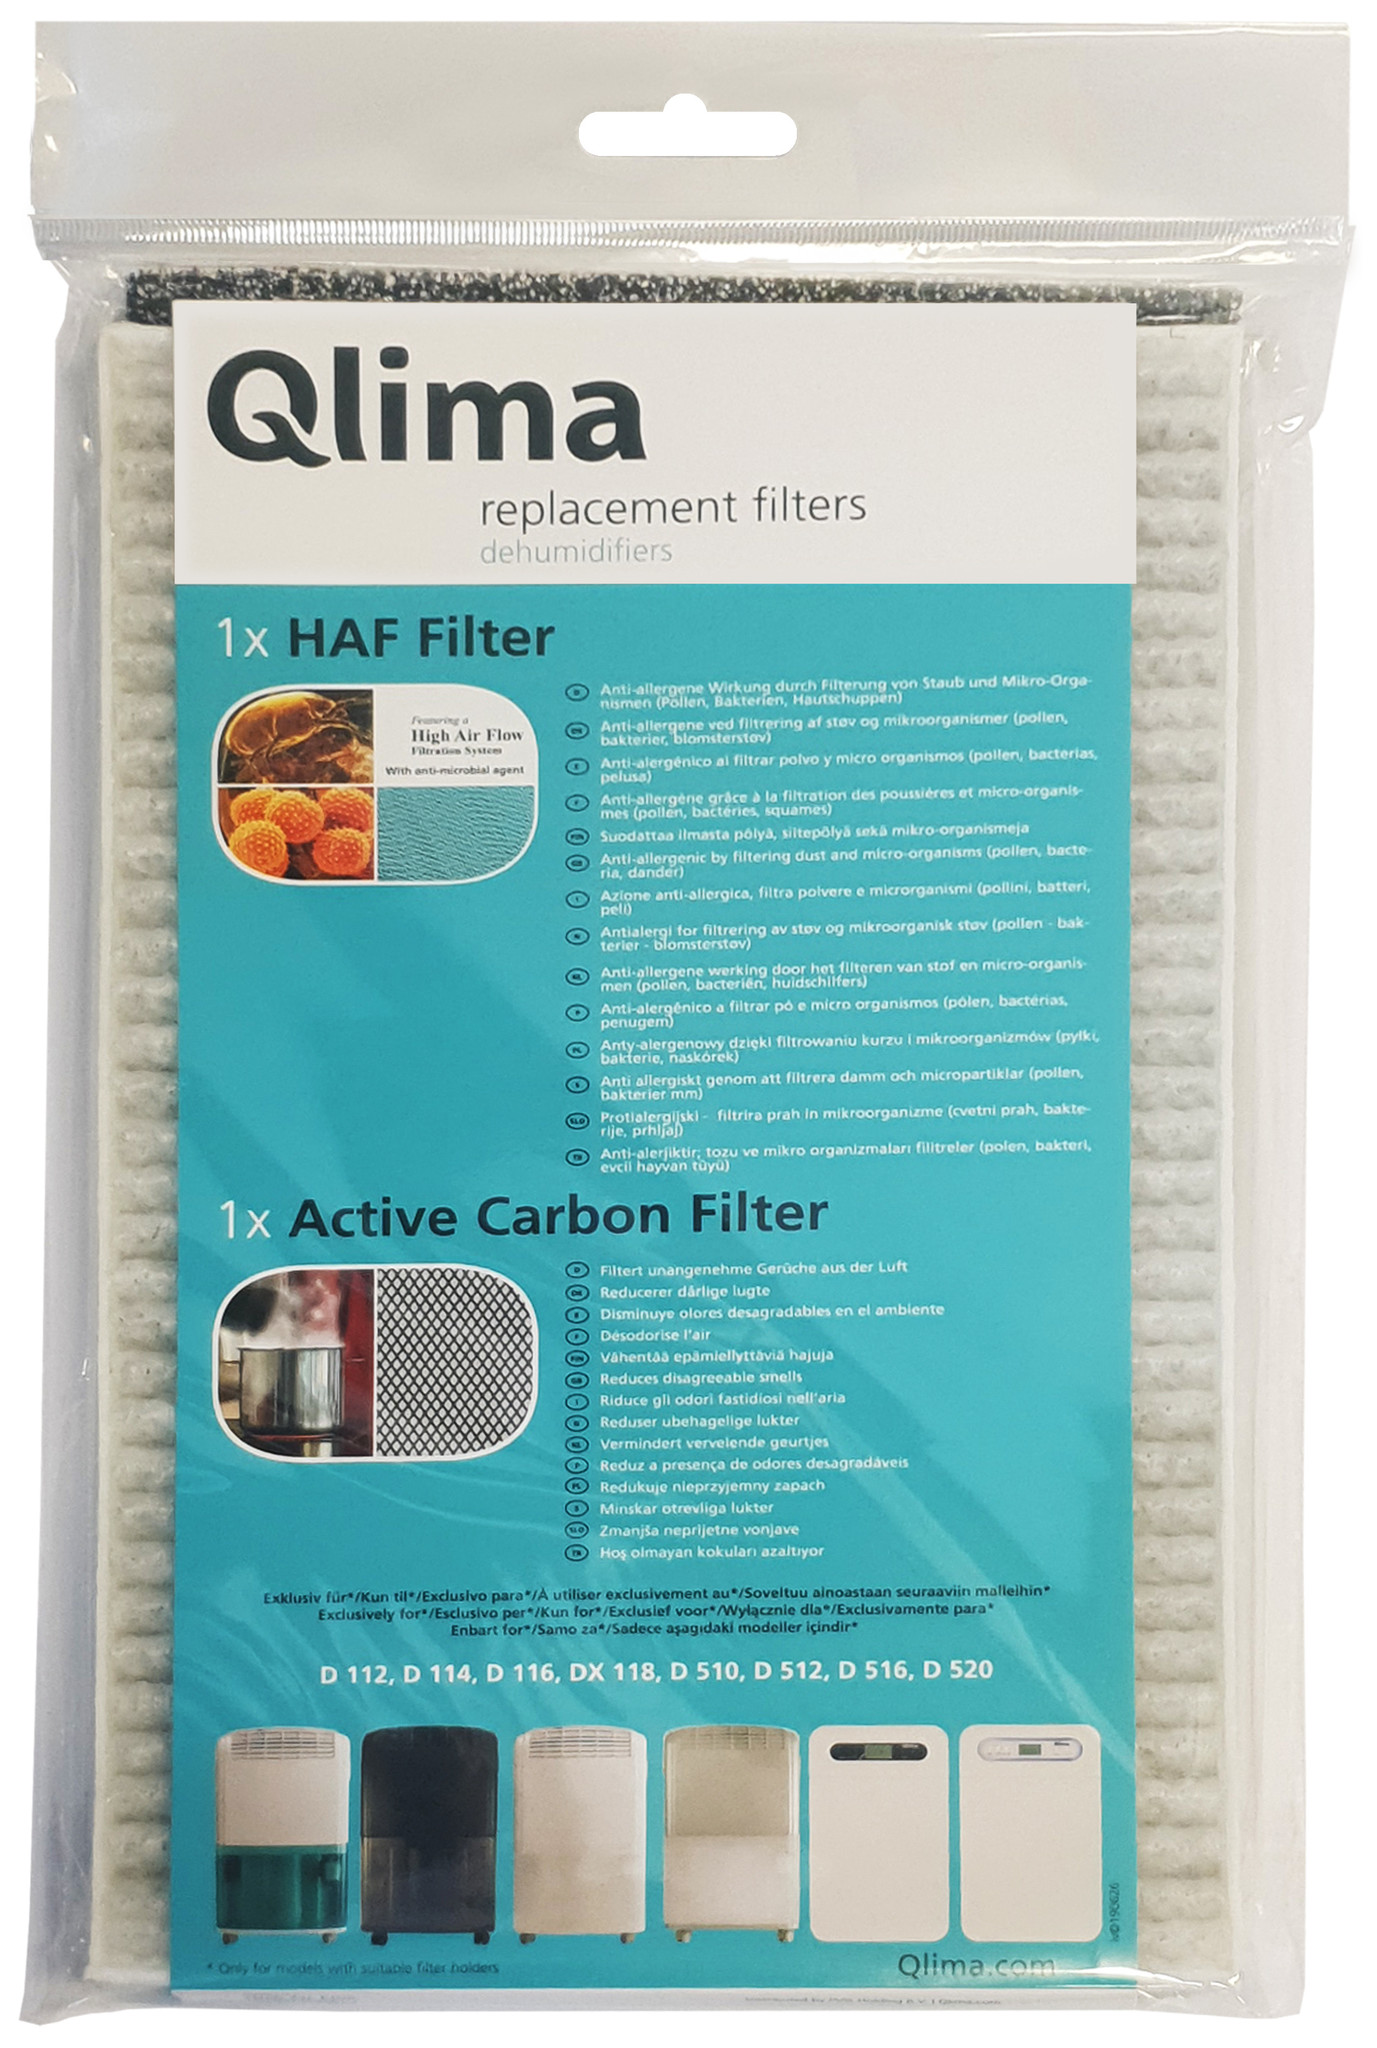 Middelen Wetenschap schroot Qlima Filterset t.b.v. luchtontvochtiger | Zibrowebshop.com